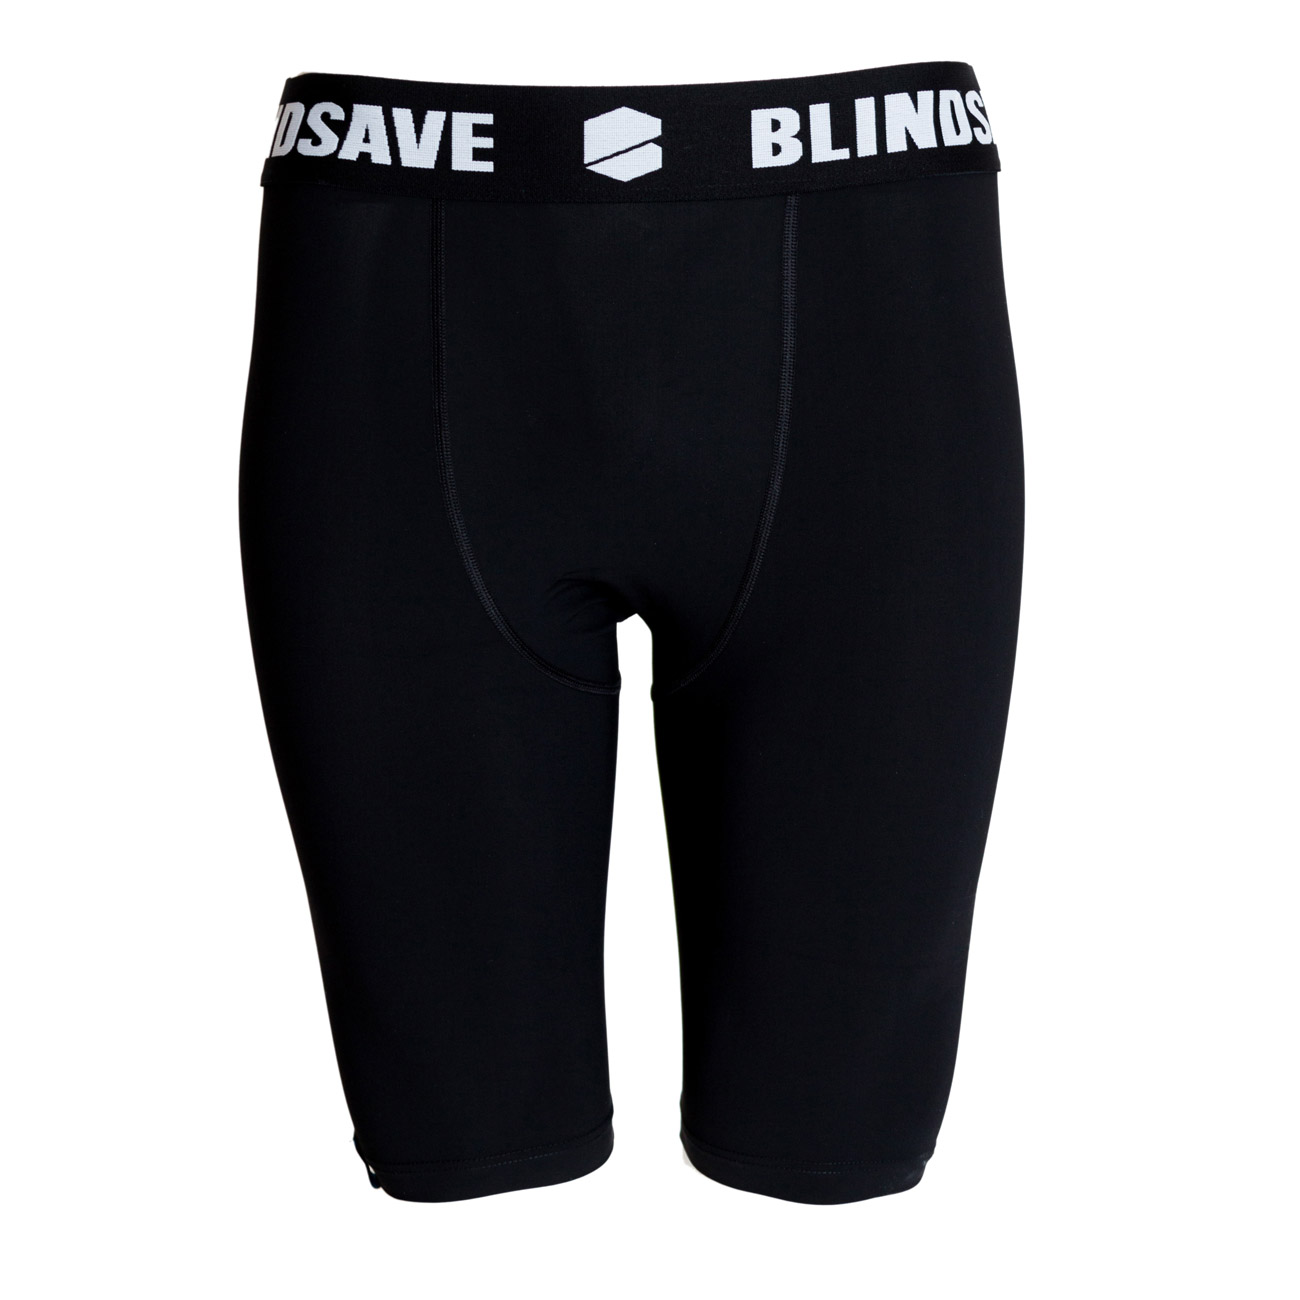 BLINDSAVE Compression Shorts Black